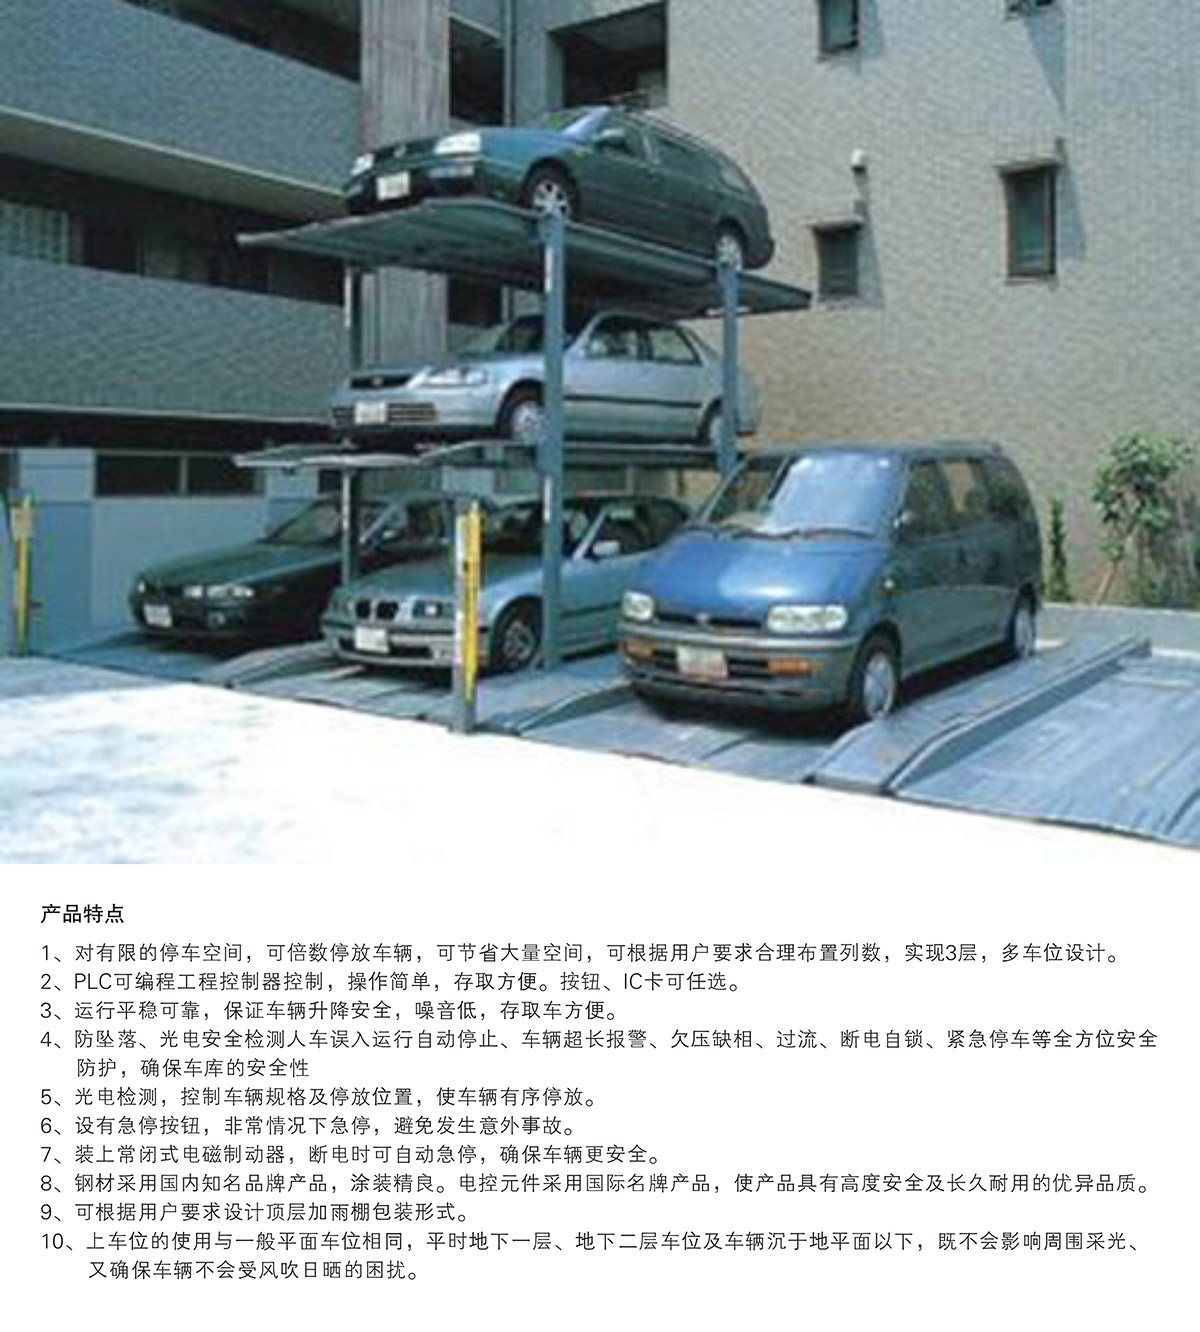 机械立体停车PJS3D2三层地坑简易升降立体停车产品特点.jpg